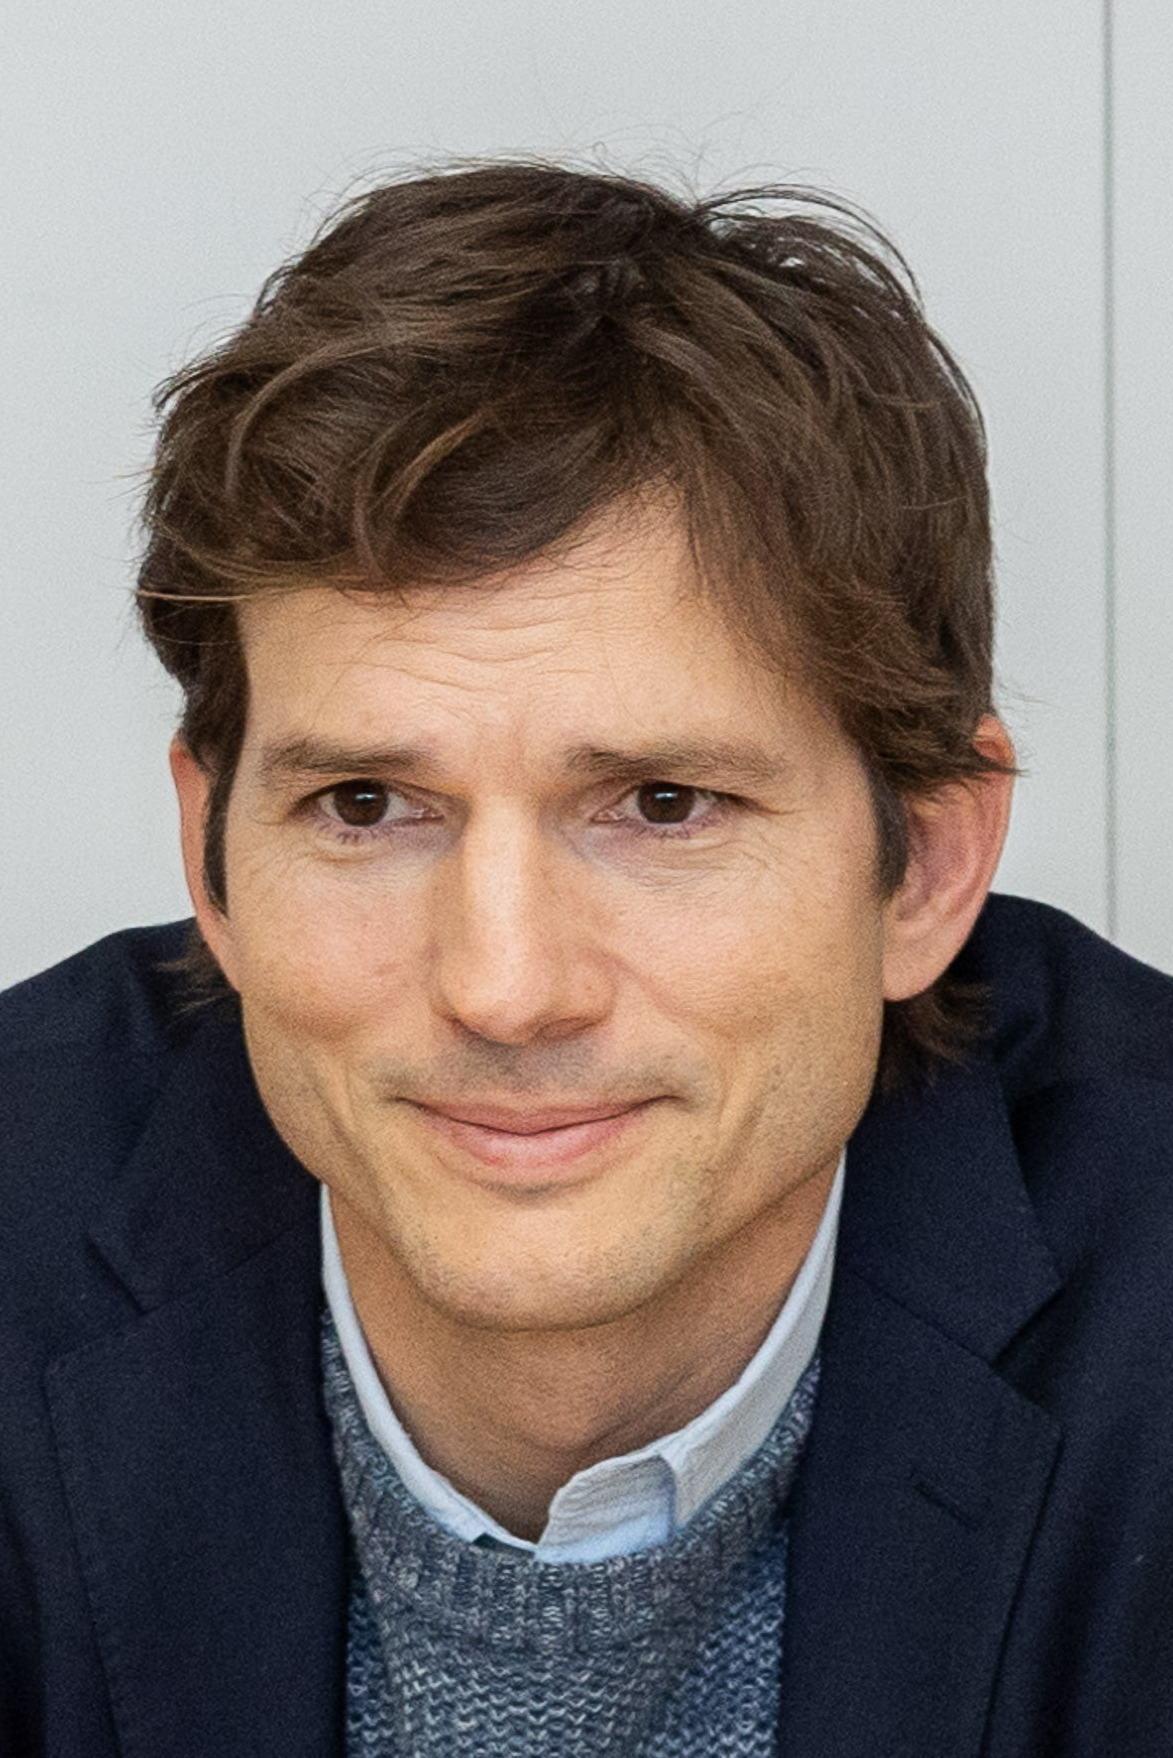 Ashton Kutcher - Wikipedia